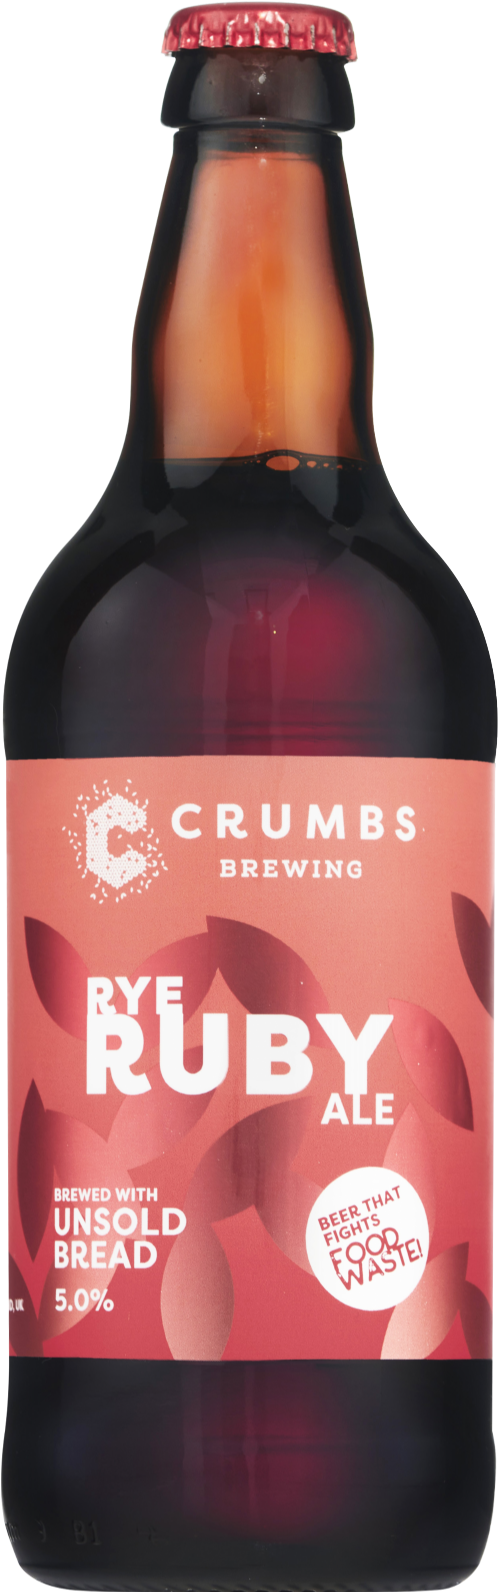 CRUMBS BREWING Rye Ruby Ale 5% ABV 500ml